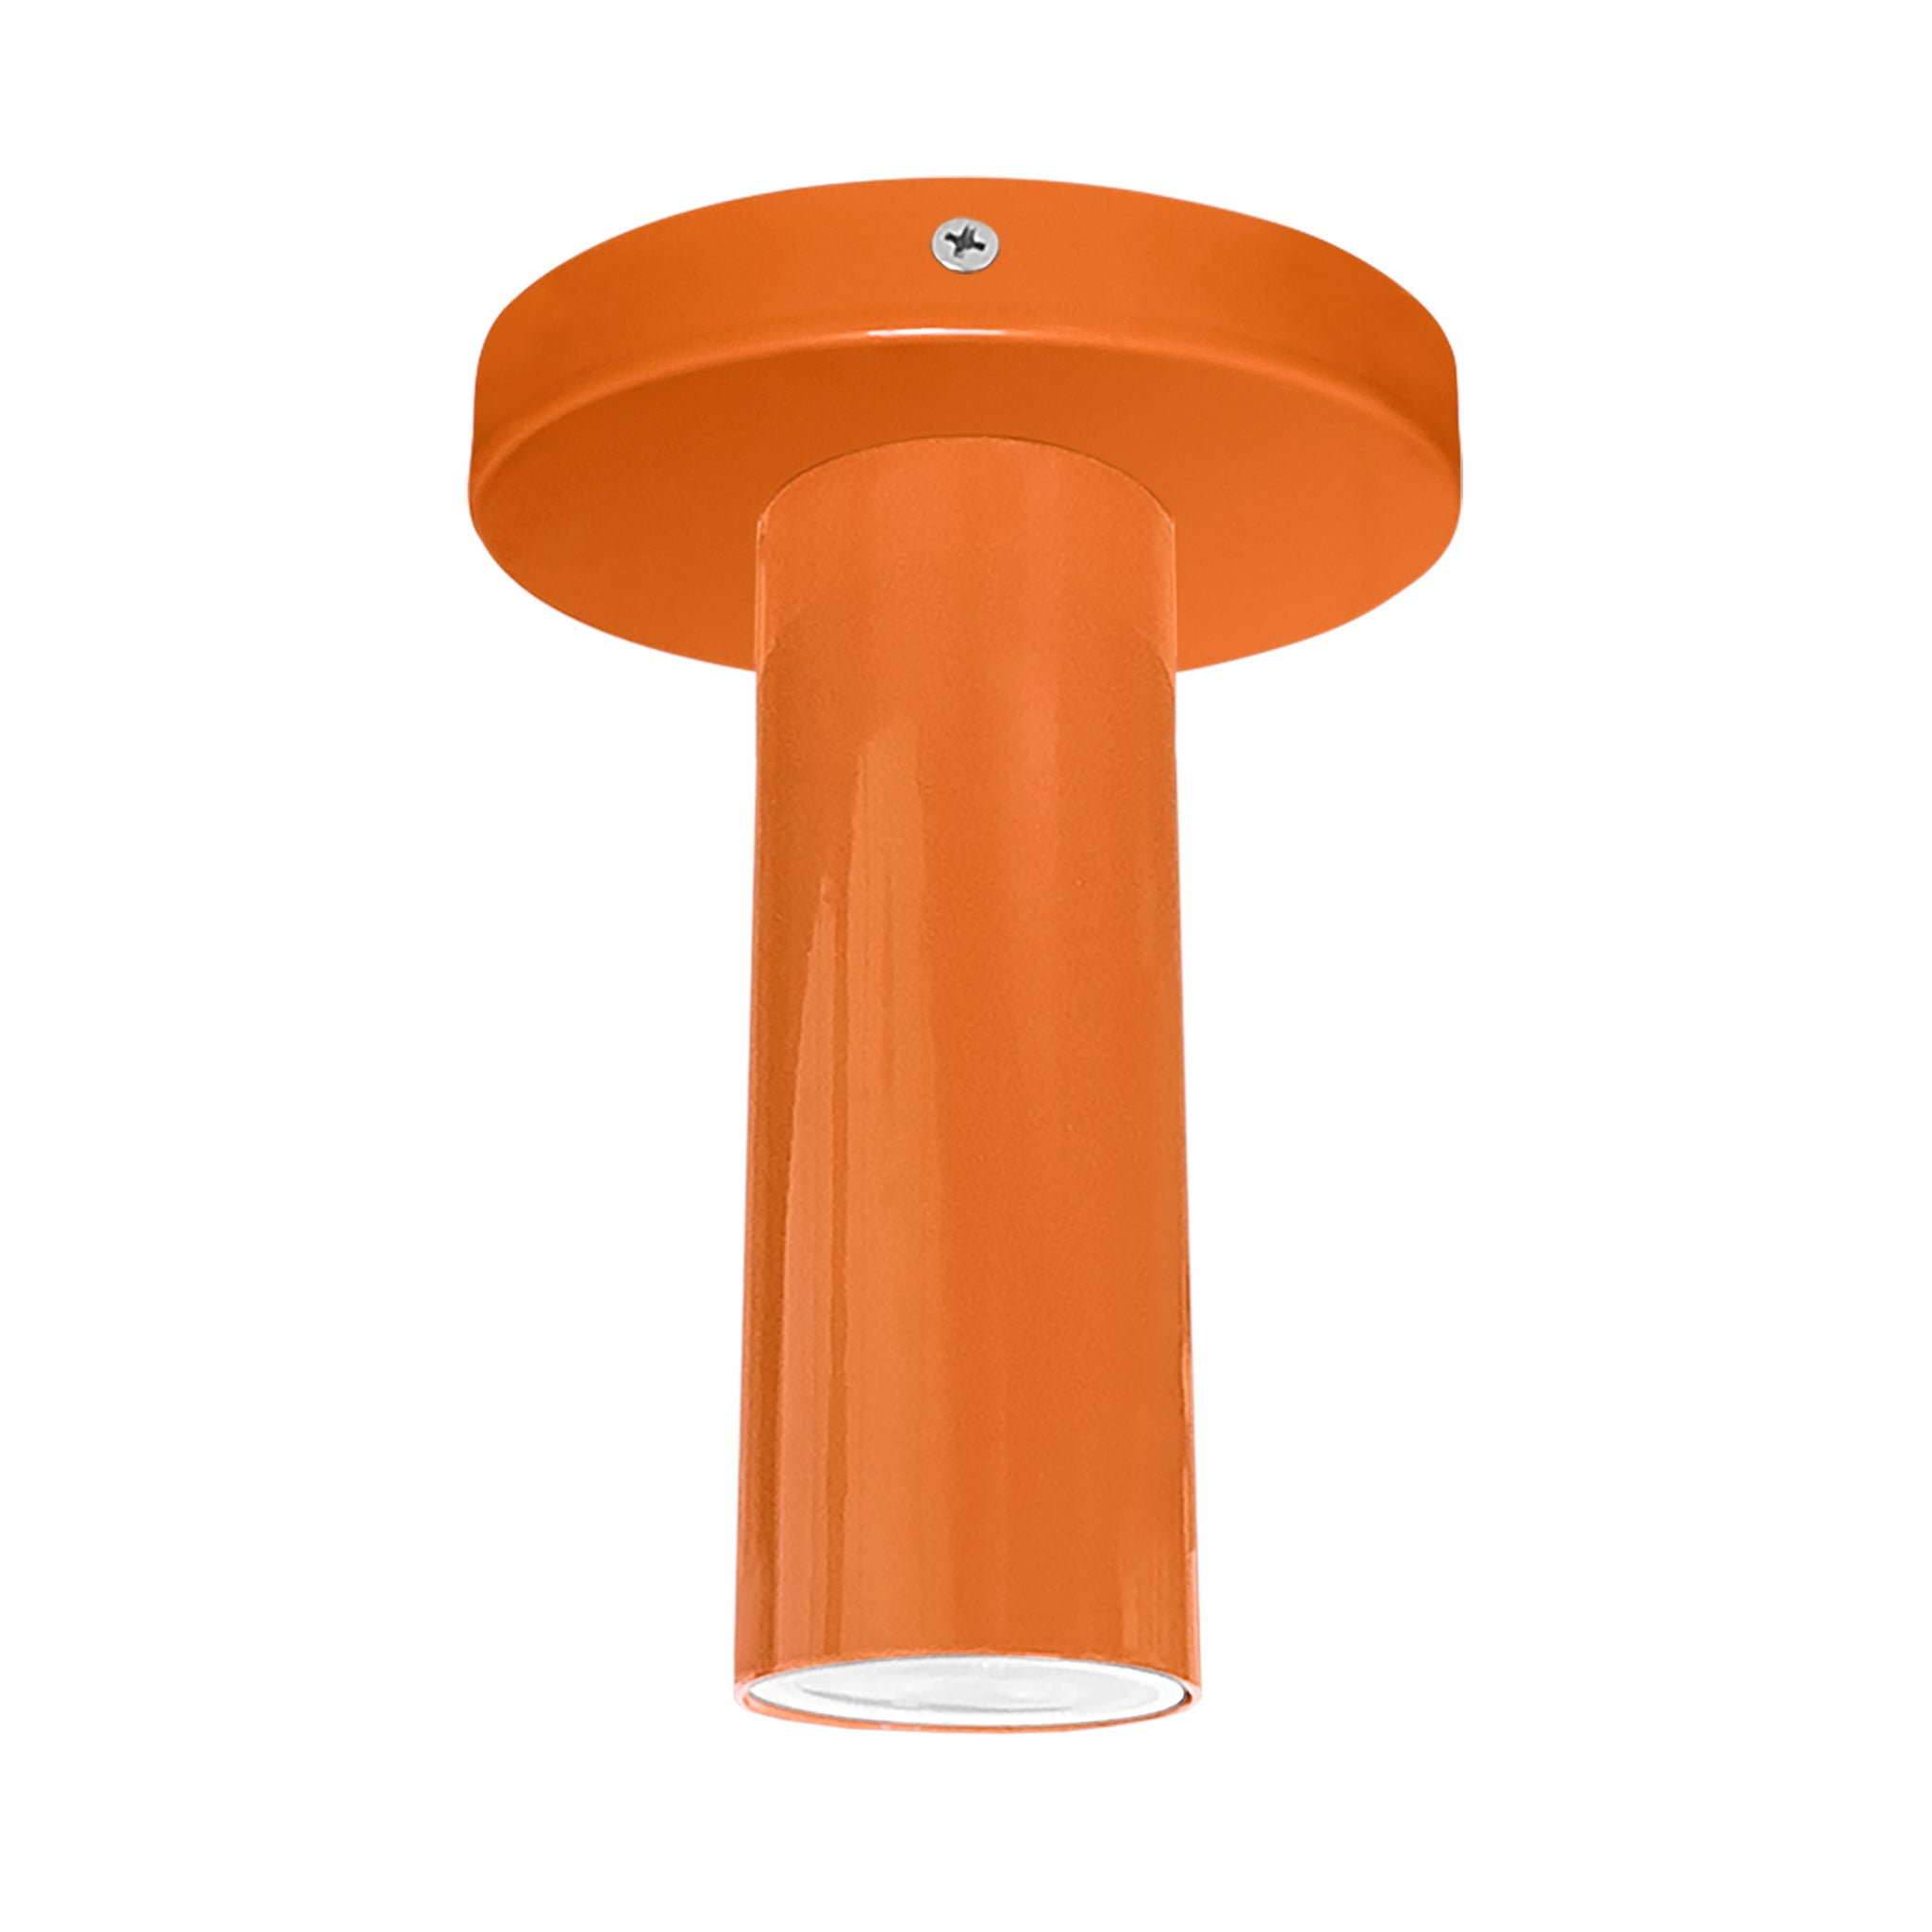 Nickel and orange color Reader flush mount Dutton Brown lighting